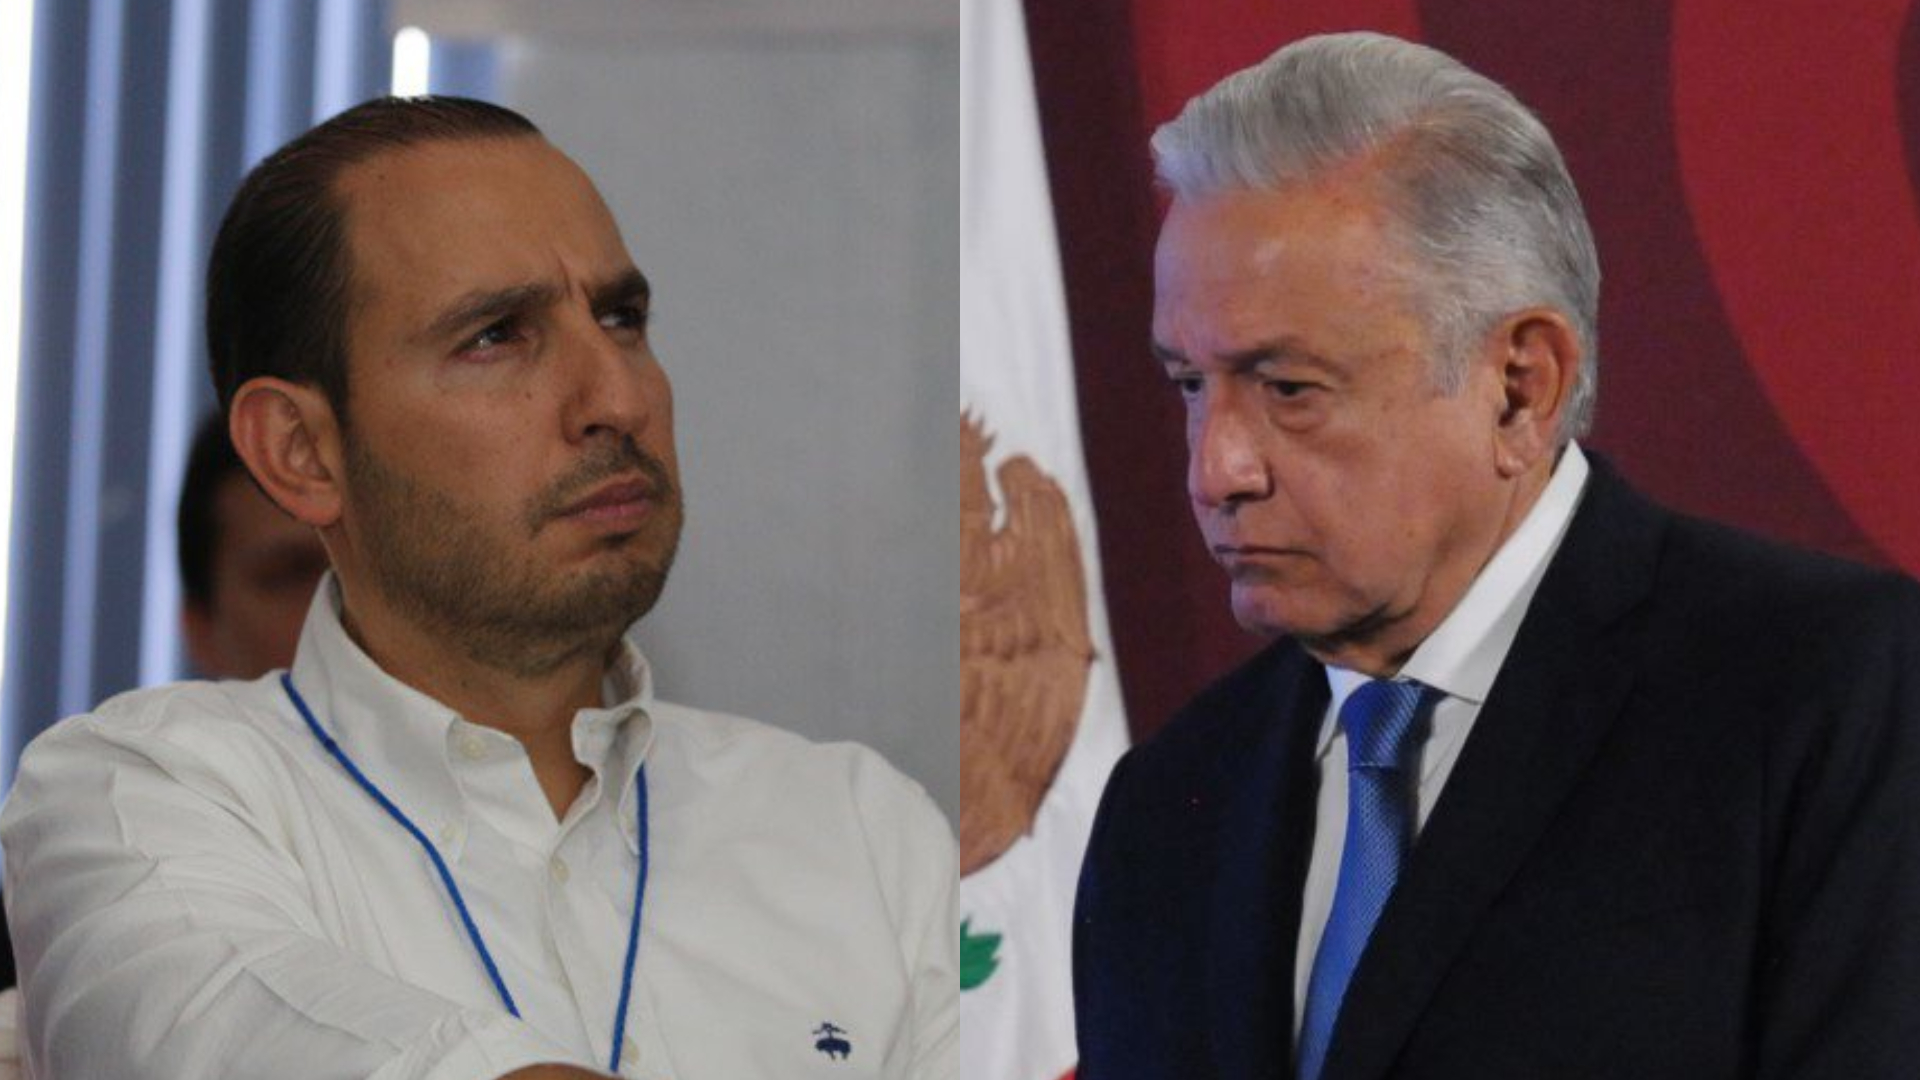 Marko Cortés criticó acciones de AMLO frente al narco en México: “El país se le está incendiando”